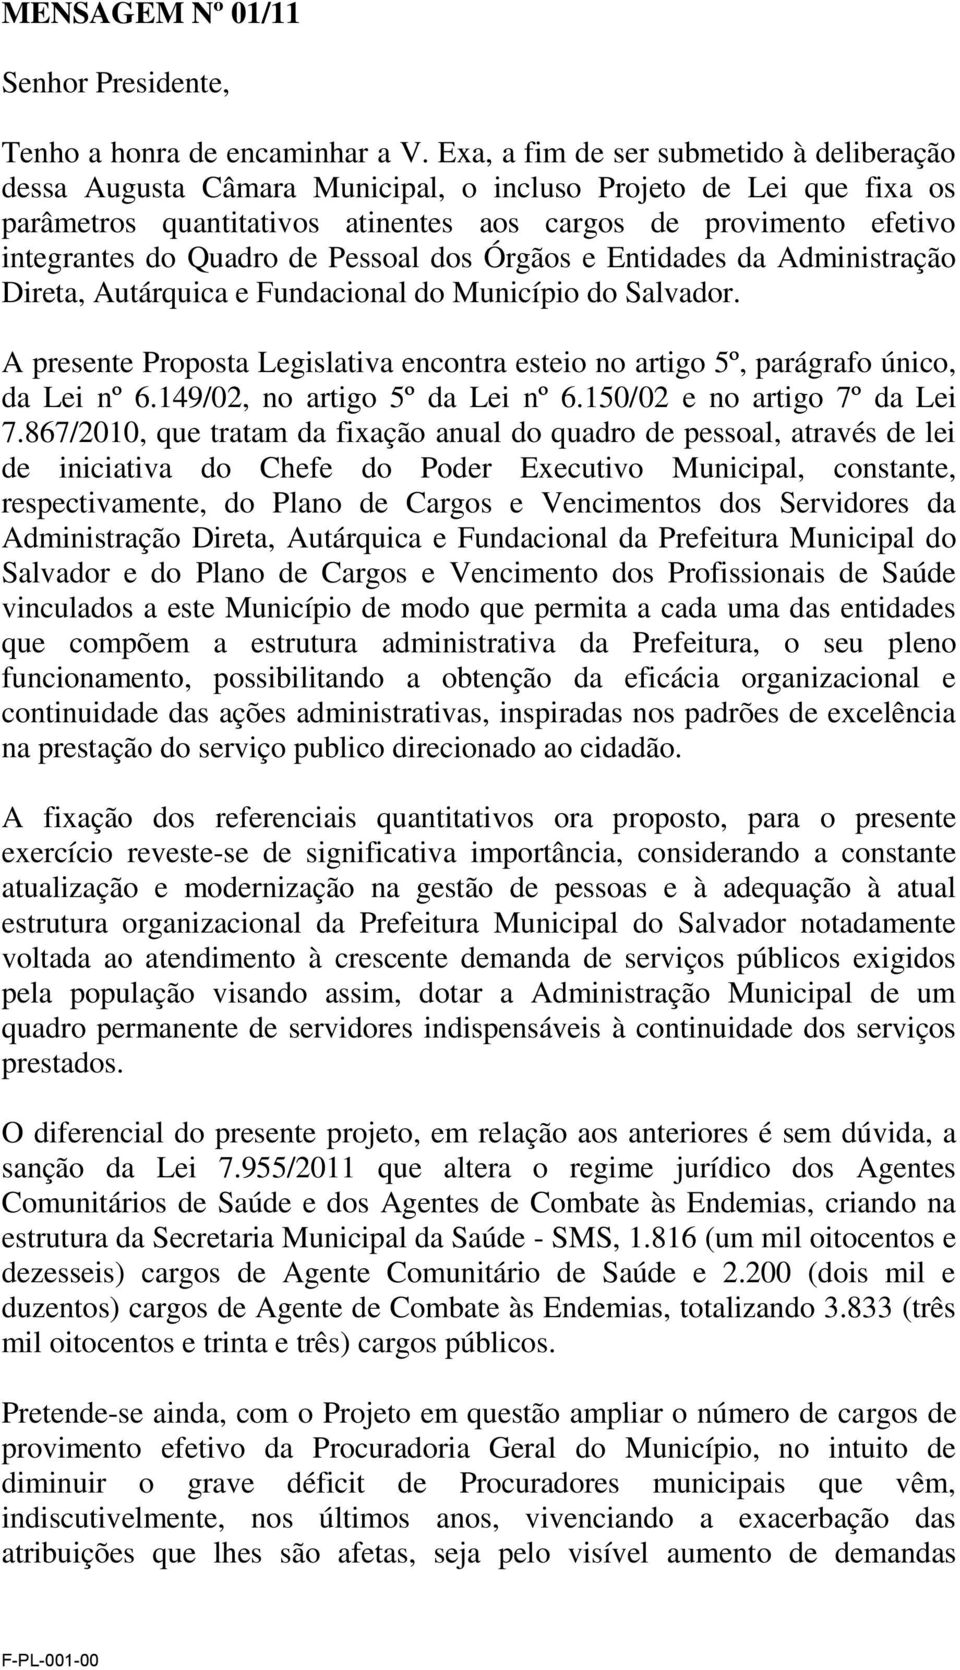 Quadro de Pessoal dos Órgãos e Entidades da Administração Direta, Autárquica e Fundacional do Município do Salvador.